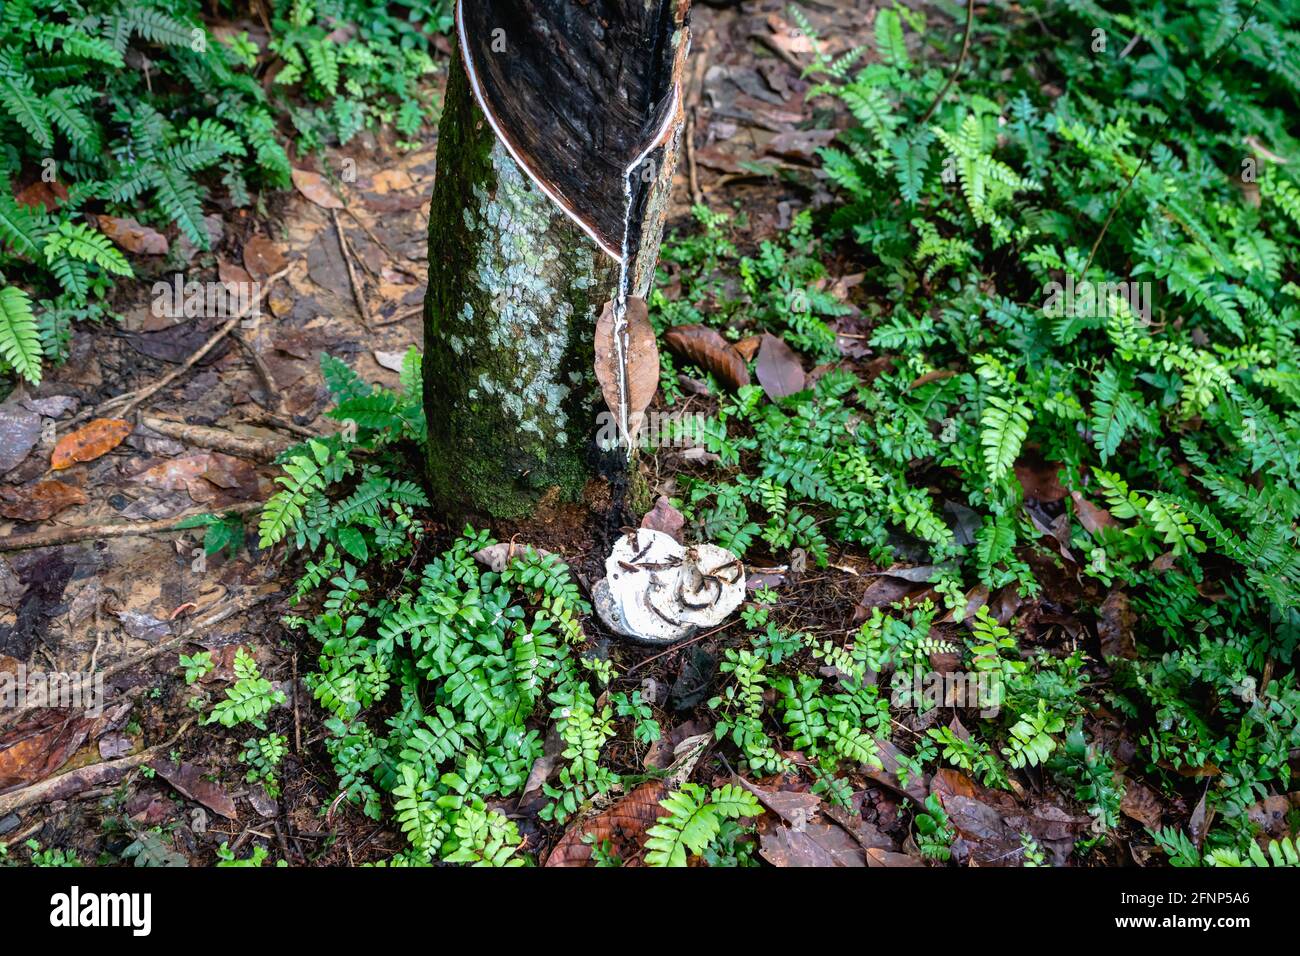 Piantagione di alberi di gomma, maschiatura di gomma da pianta di albero di gomma para (Hevea brasiliensis) nella foresta pluviale in Indonesia. Estratto di materia prima di lattice naturale Foto Stock